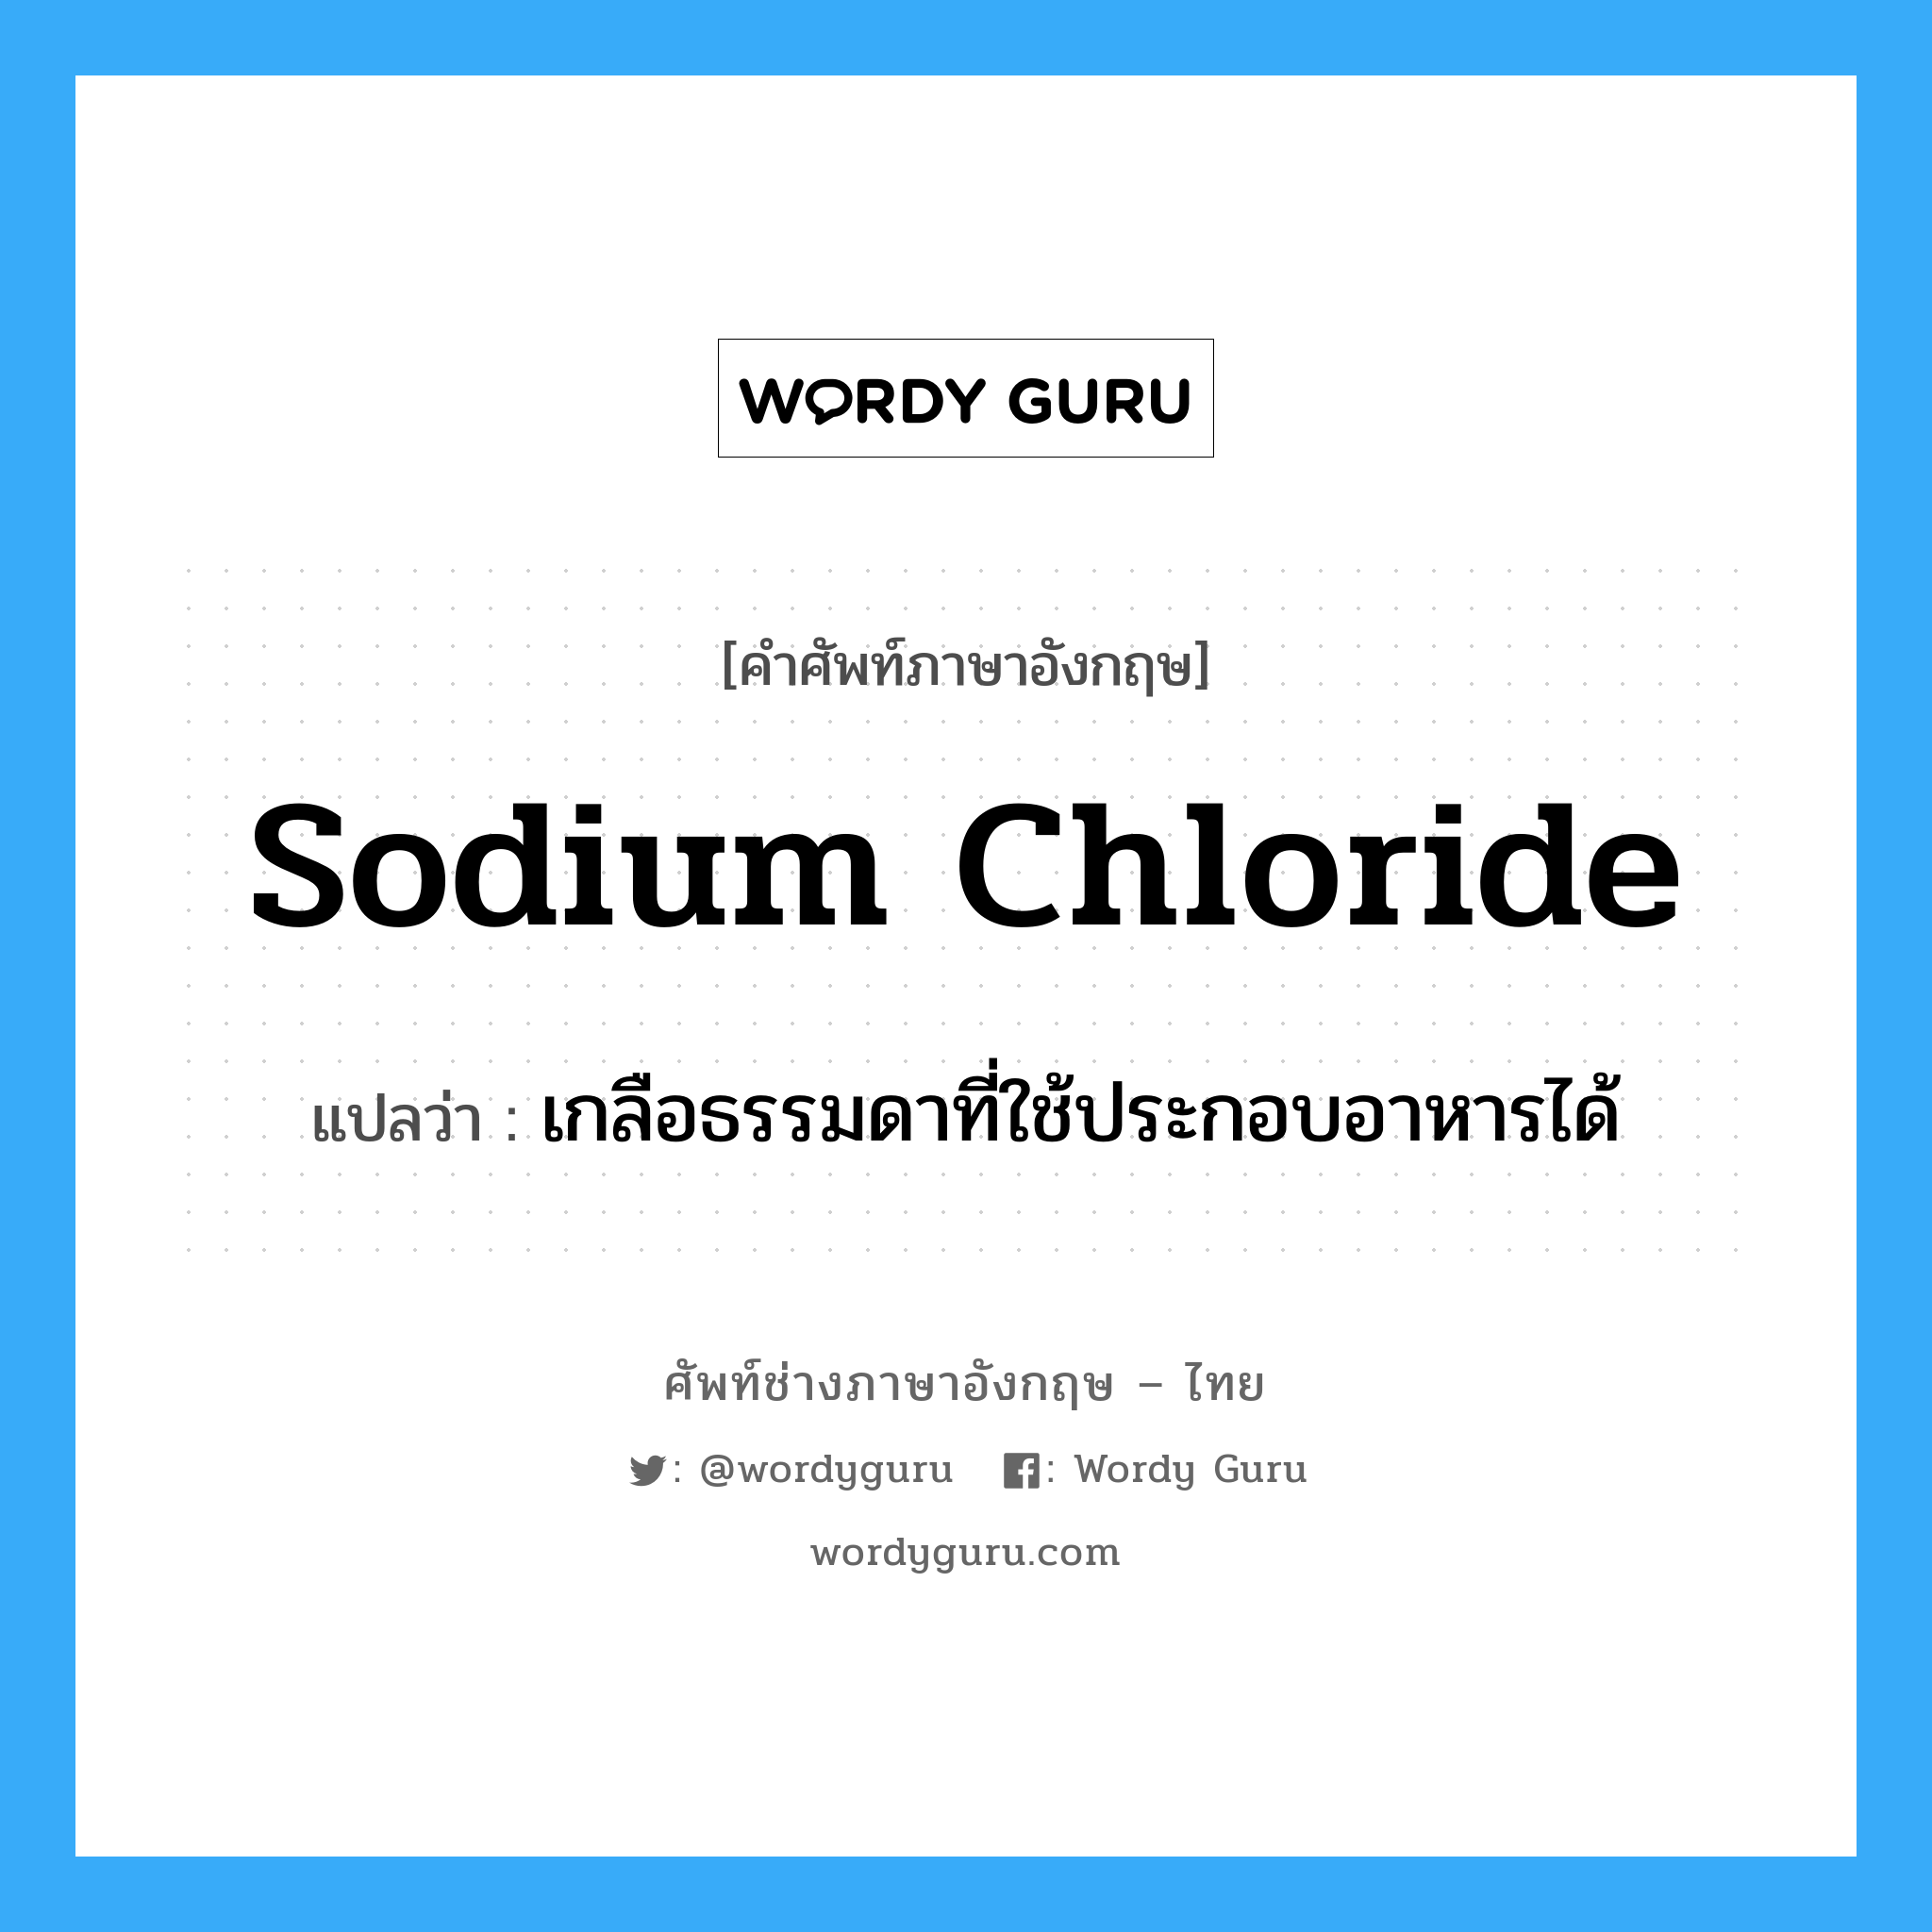 sodium chloride แปลว่า?, คำศัพท์ช่างภาษาอังกฤษ - ไทย sodium chloride คำศัพท์ภาษาอังกฤษ sodium chloride แปลว่า เกลือธรรมดาที่ใช้ประกอบอาหารได้